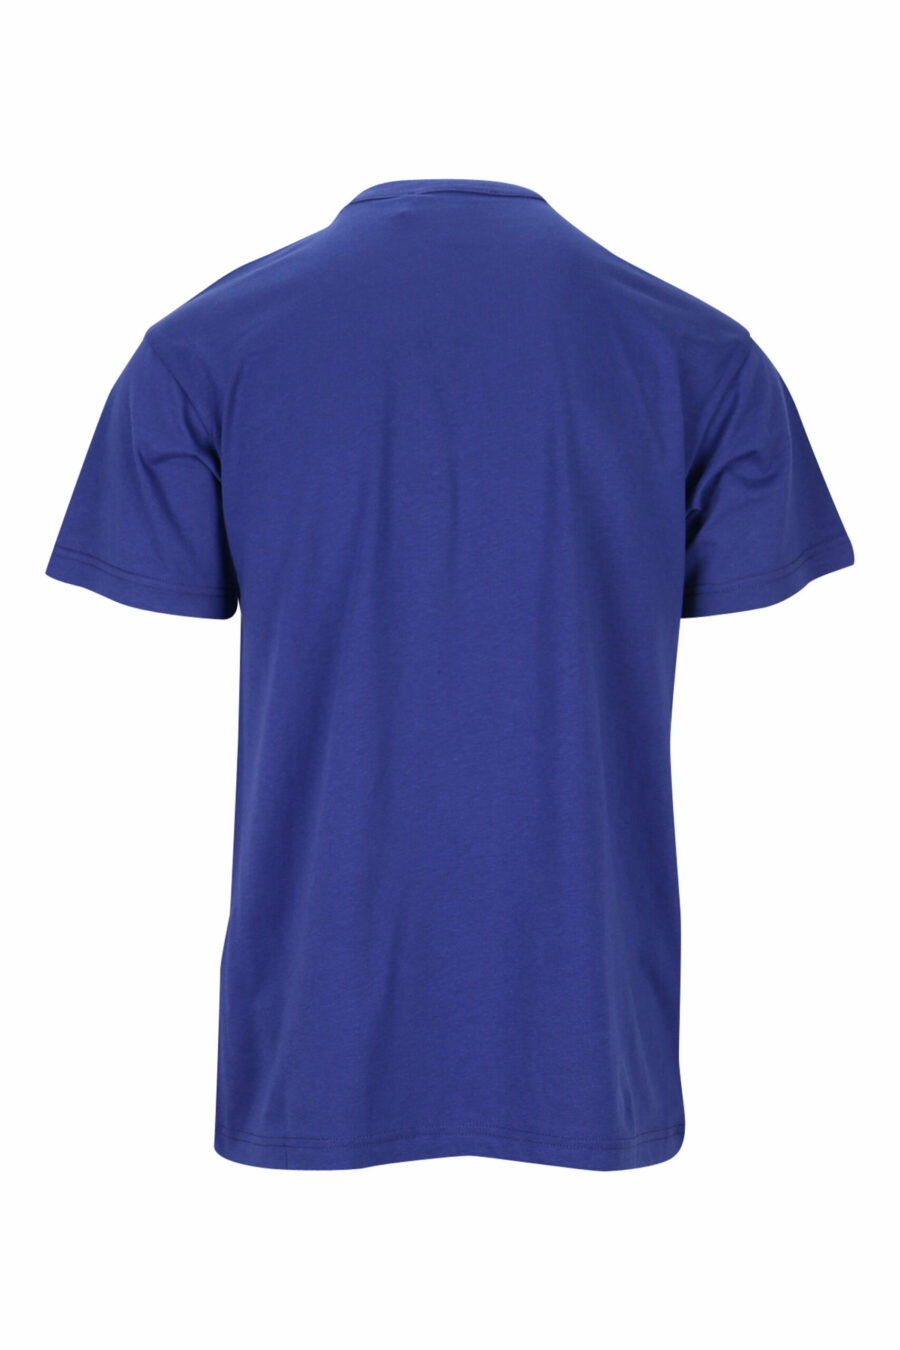 T-shirt bleu marine avec maxilogue bleu classique - 8052019468175 1 scaled